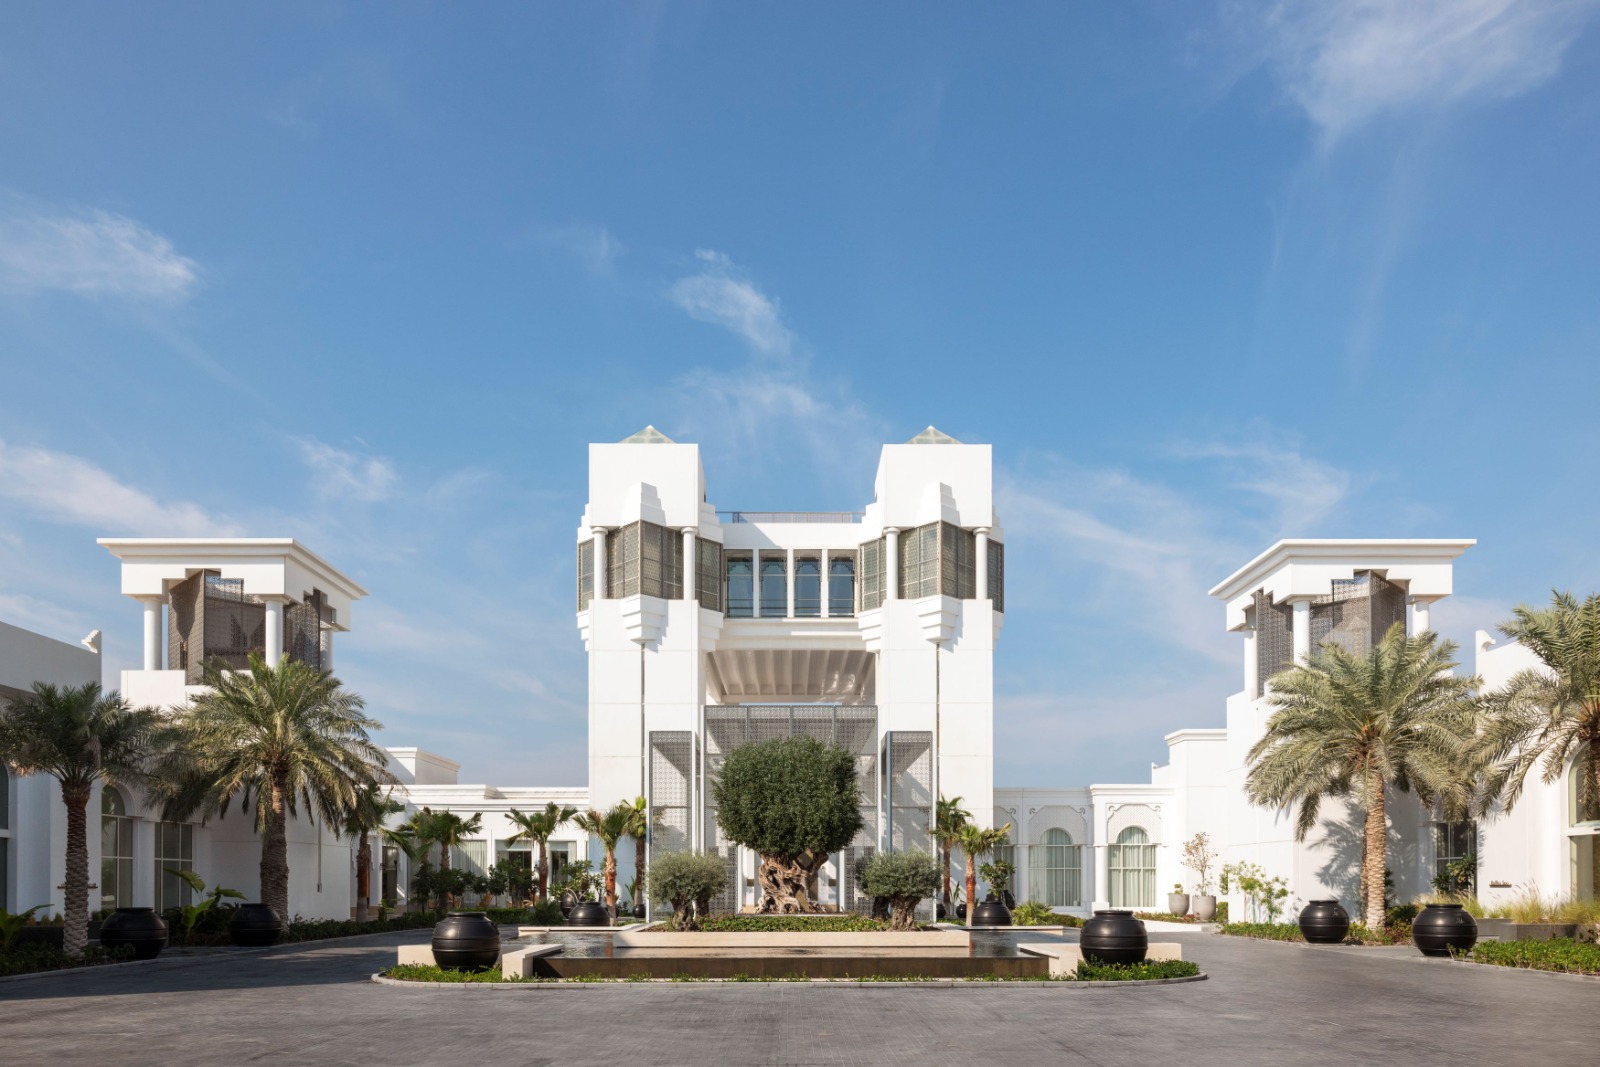 منتجع رافلز قصر العرين البحرين يفتتح أبوابه في المملكة